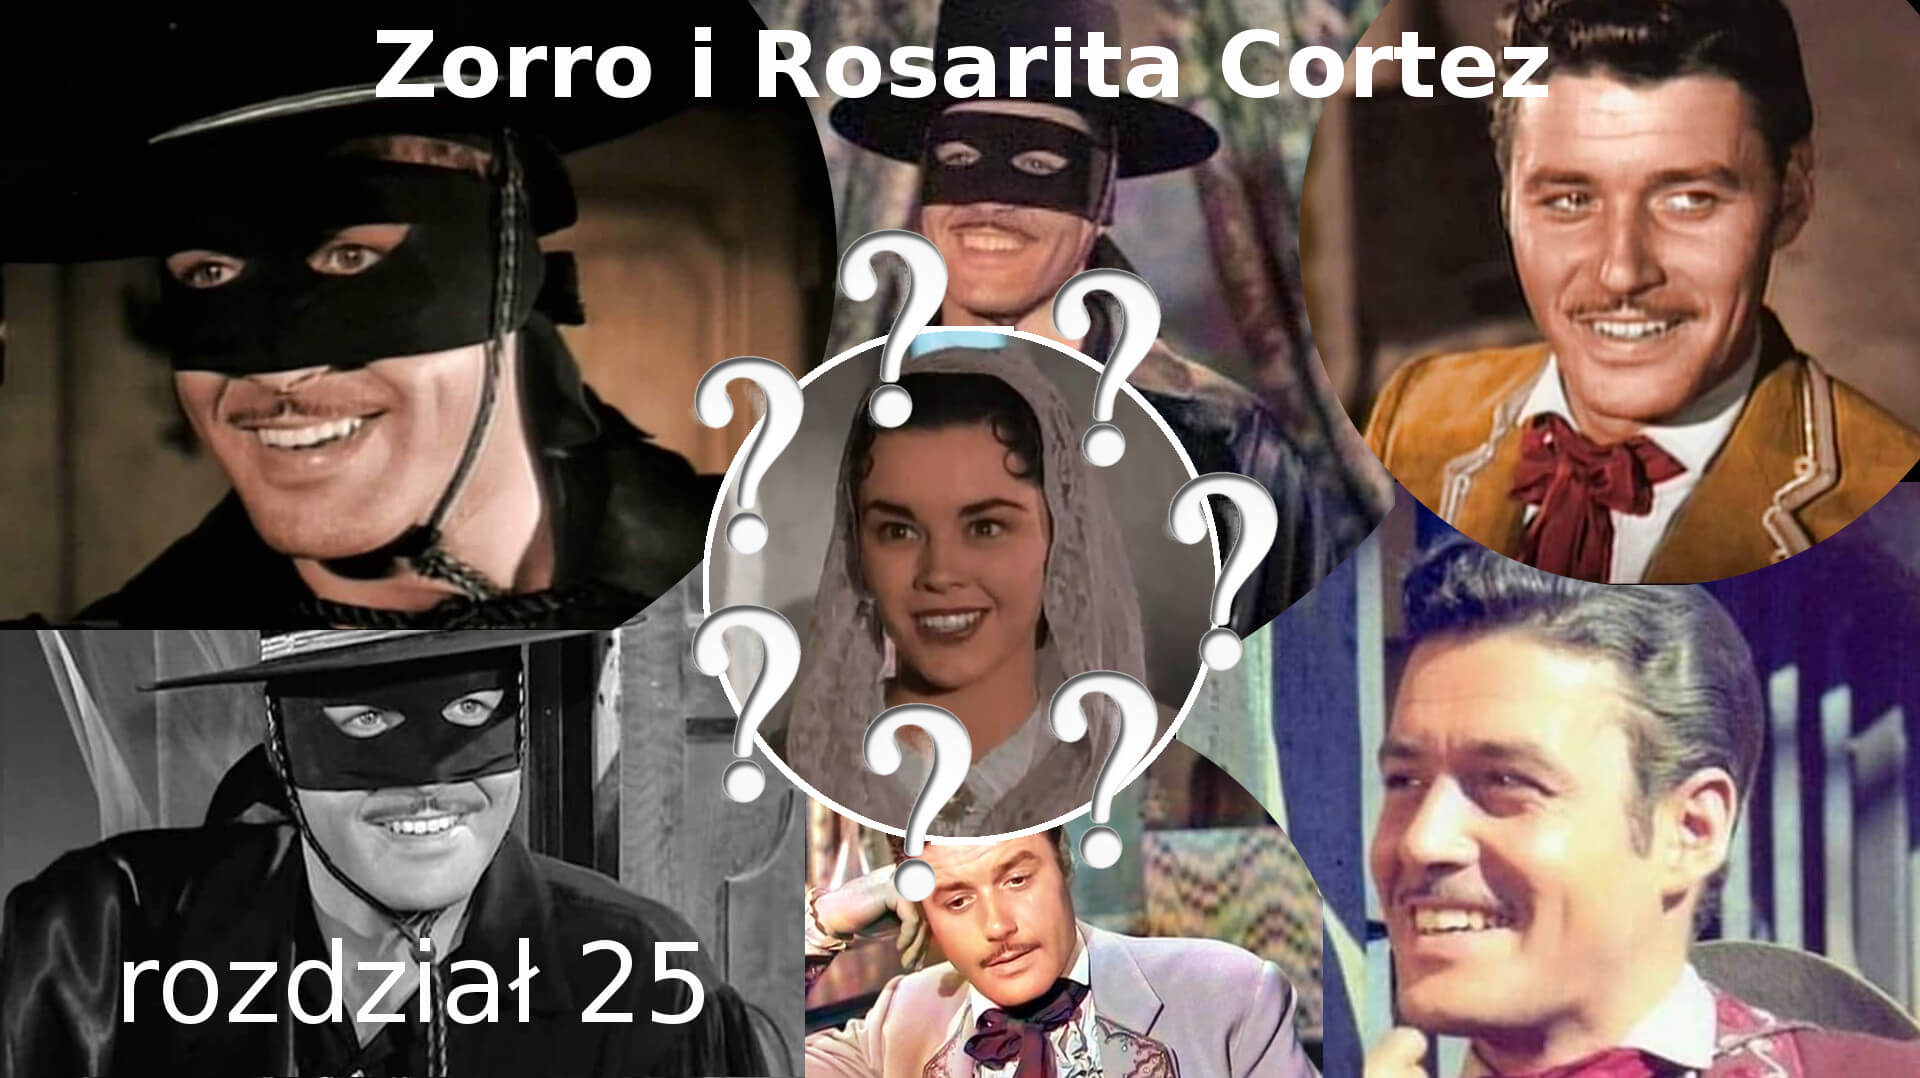 Zorro i Rosarita Cortez rozdział 25 Zorro fanfiction